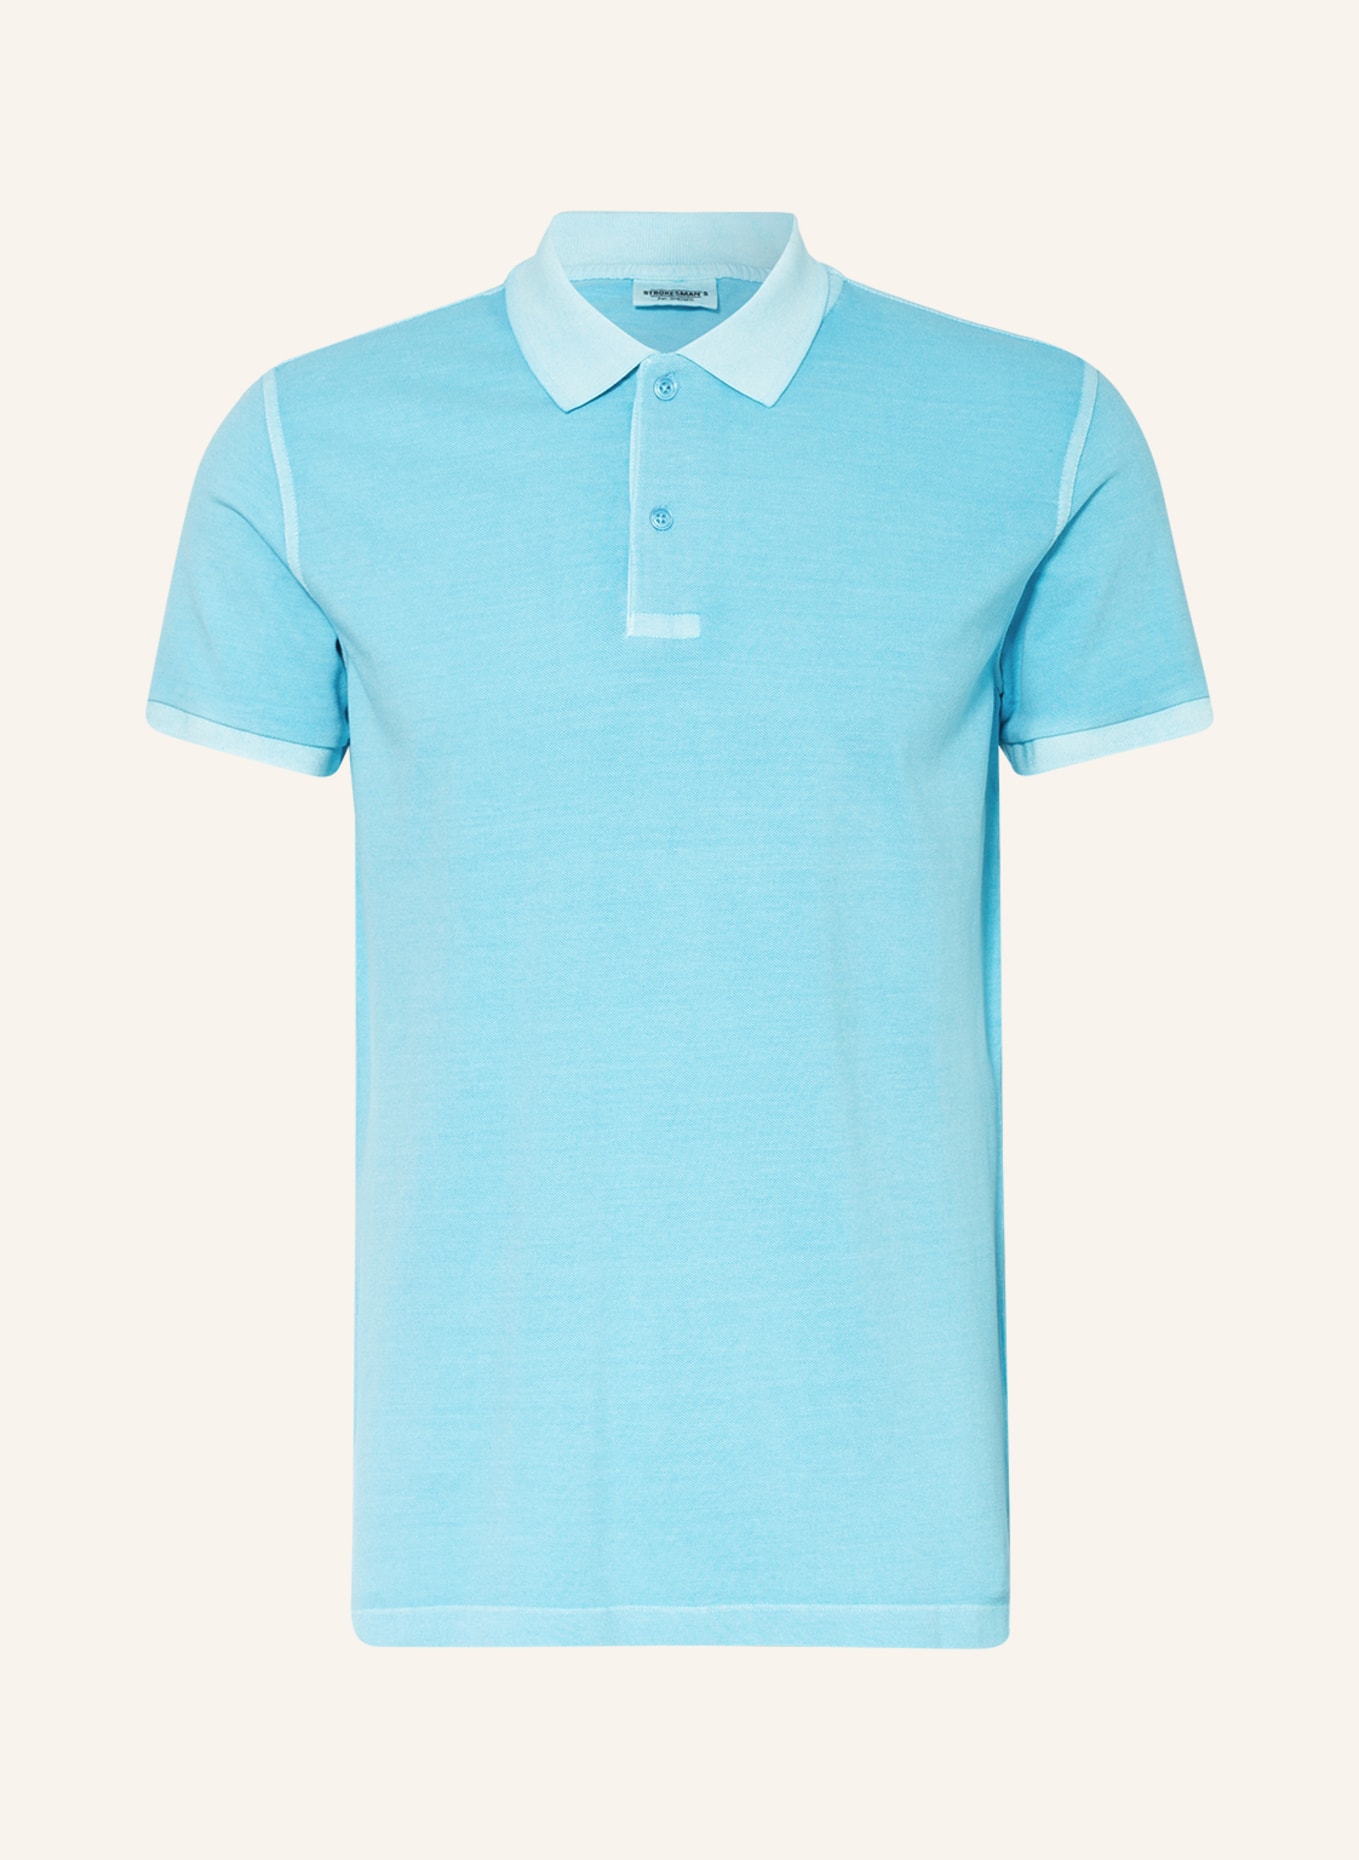 STROKESMAN'S Piqué polo shirt, Color: LIGHT BLUE (Image 1)